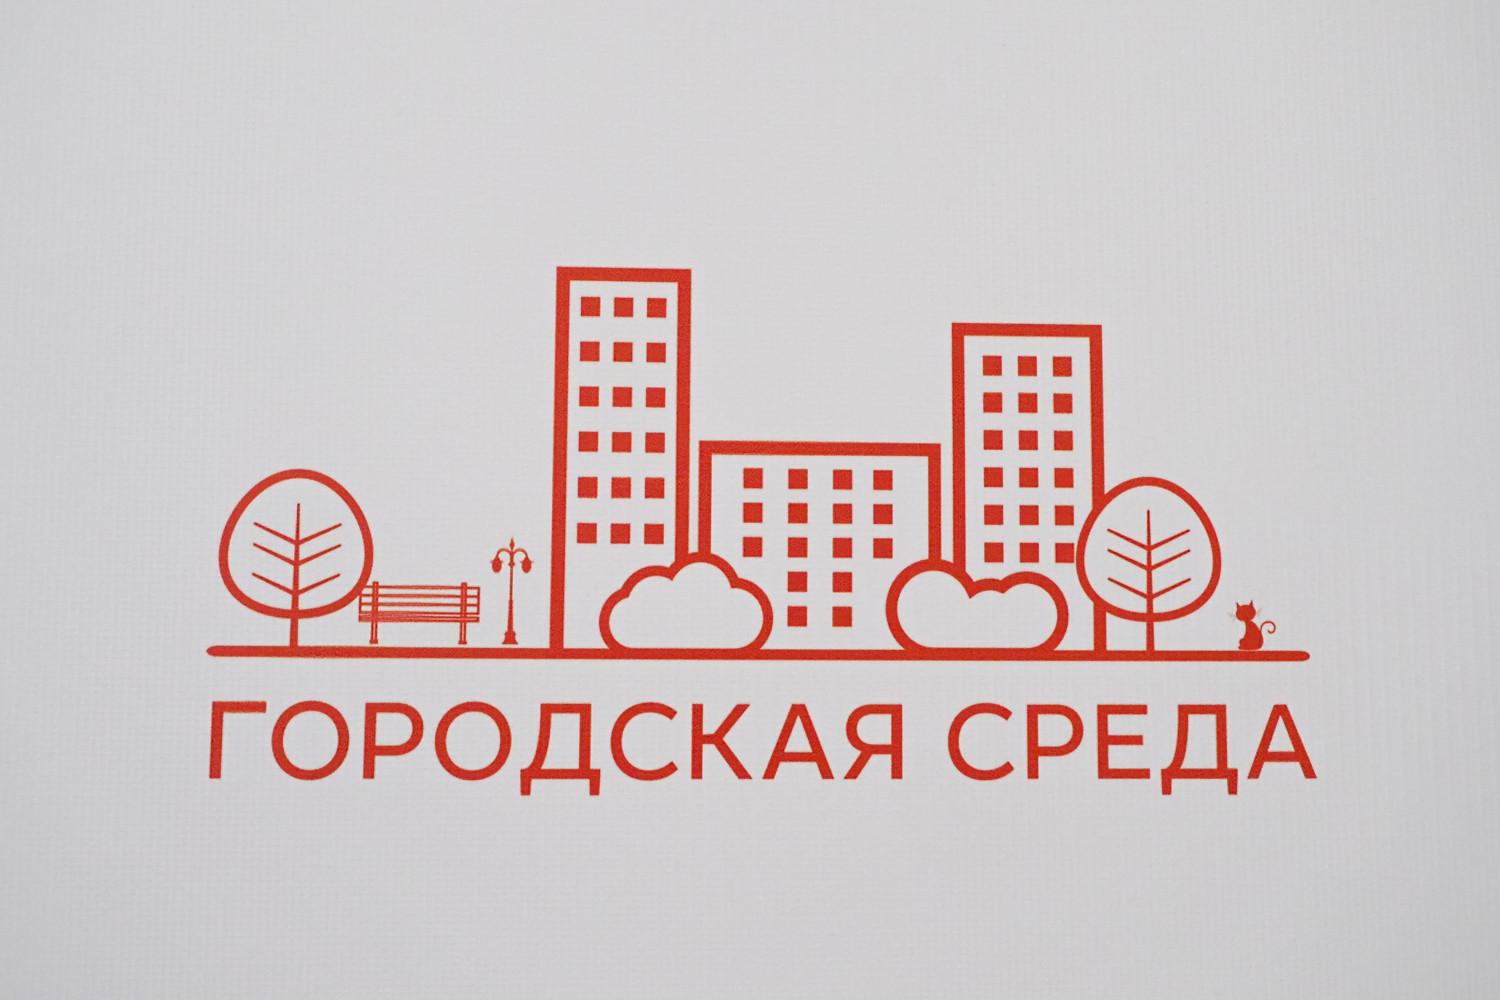 Комиссию по оценке качества городской среды создадут в России